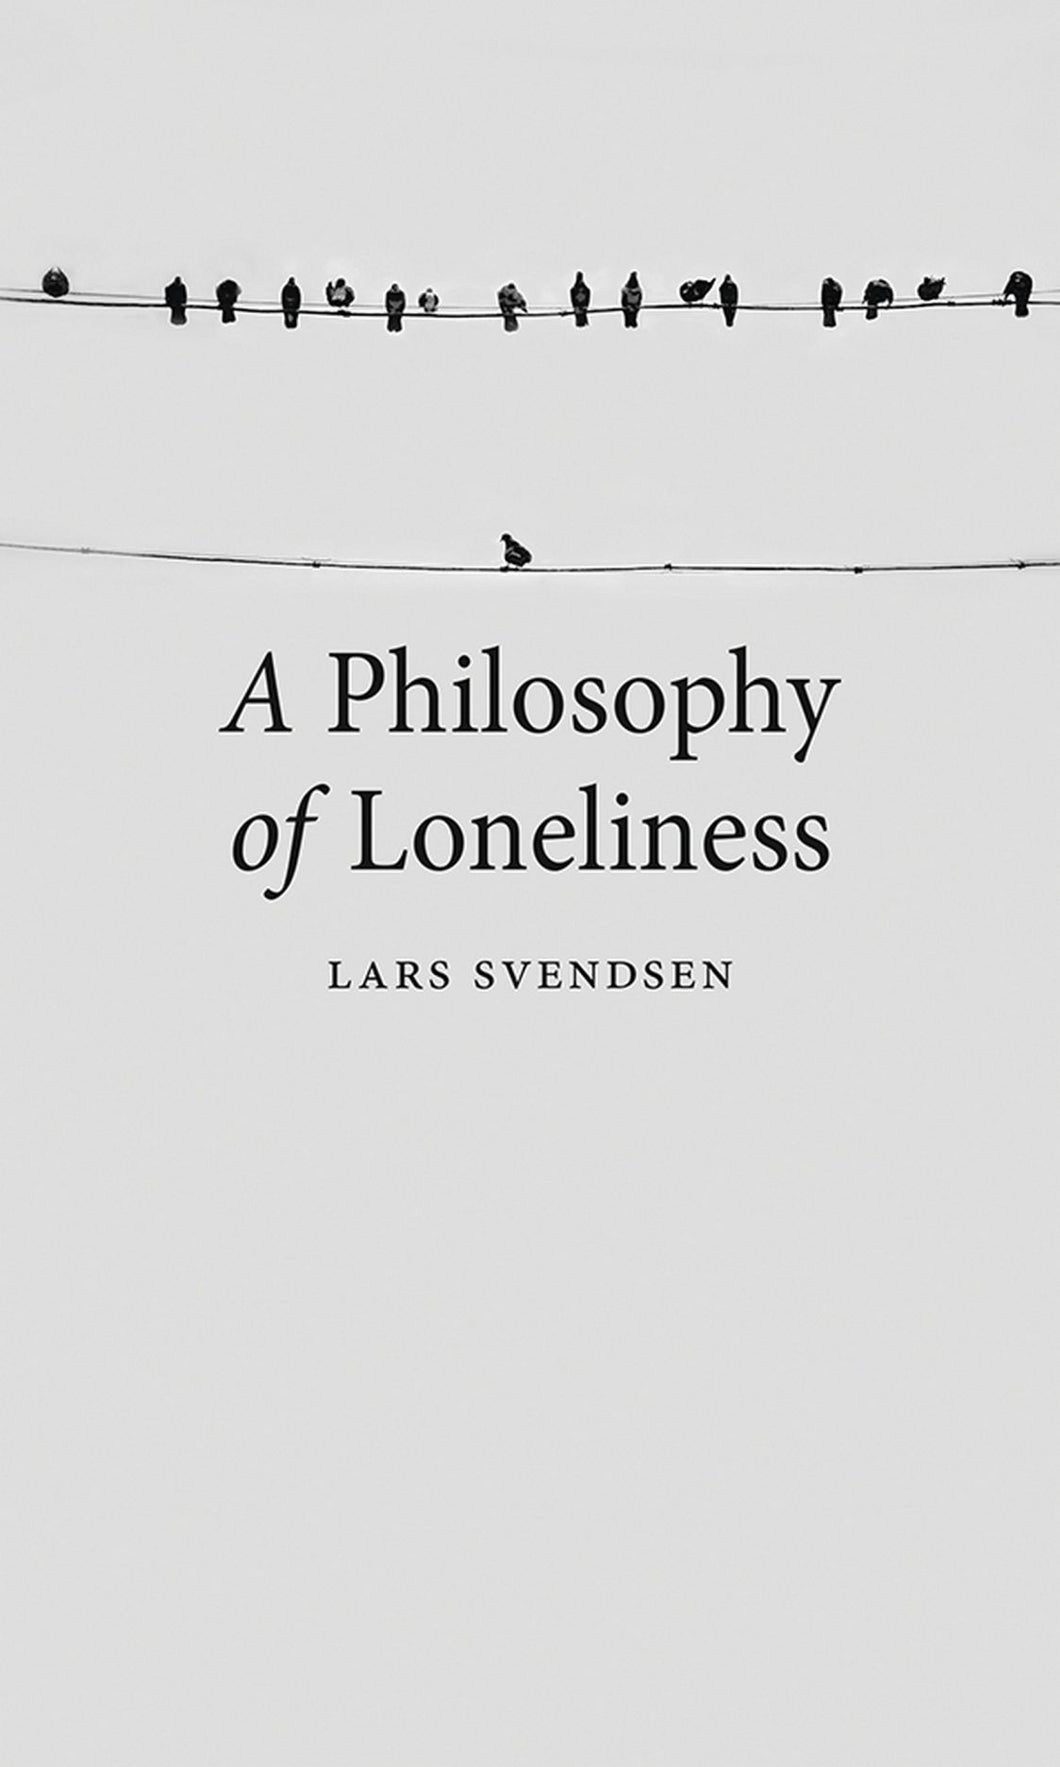 A Philosophy of Loneliness ร้านหนังสือและสิ่งของ เป็นร้านหนังสือภาษาอังกฤษหายาก และร้านกาแฟ หรือ บุ๊คคาเฟ่ ตั้งอยู่สุขุมวิท กรุงเทพ